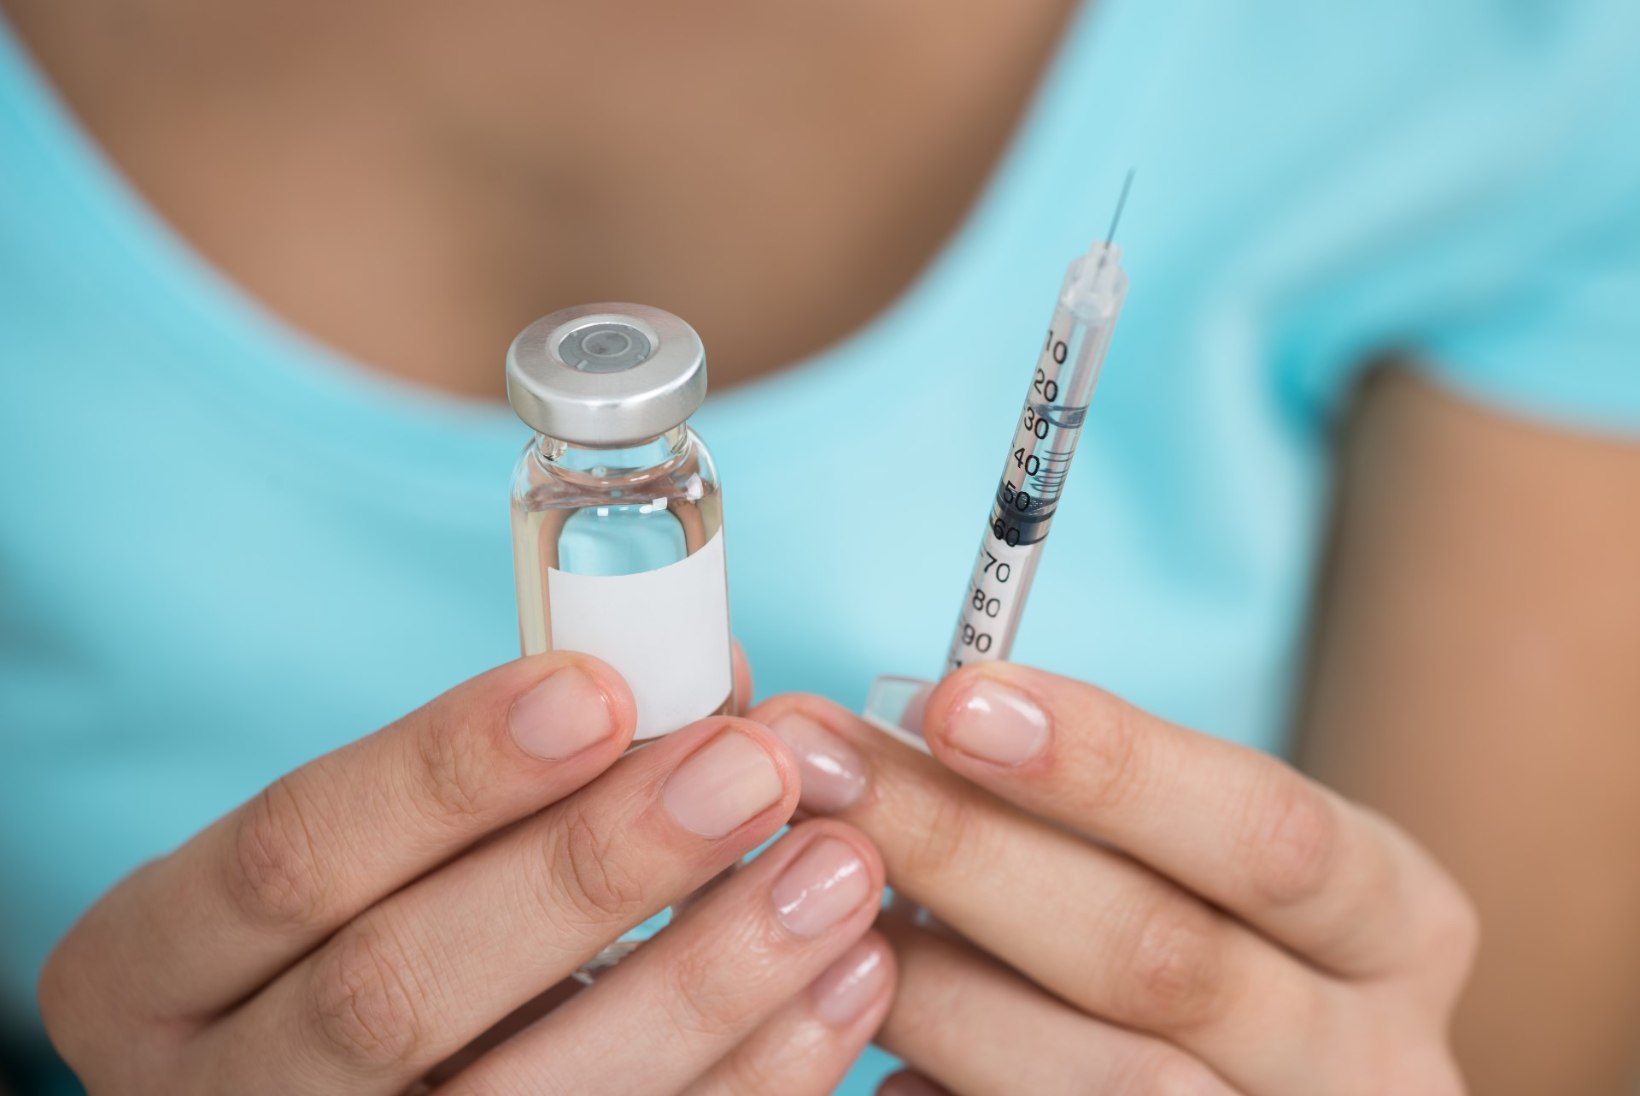 Millal peaksid täiskasvanud end leetrite vastu vaktsineerima?